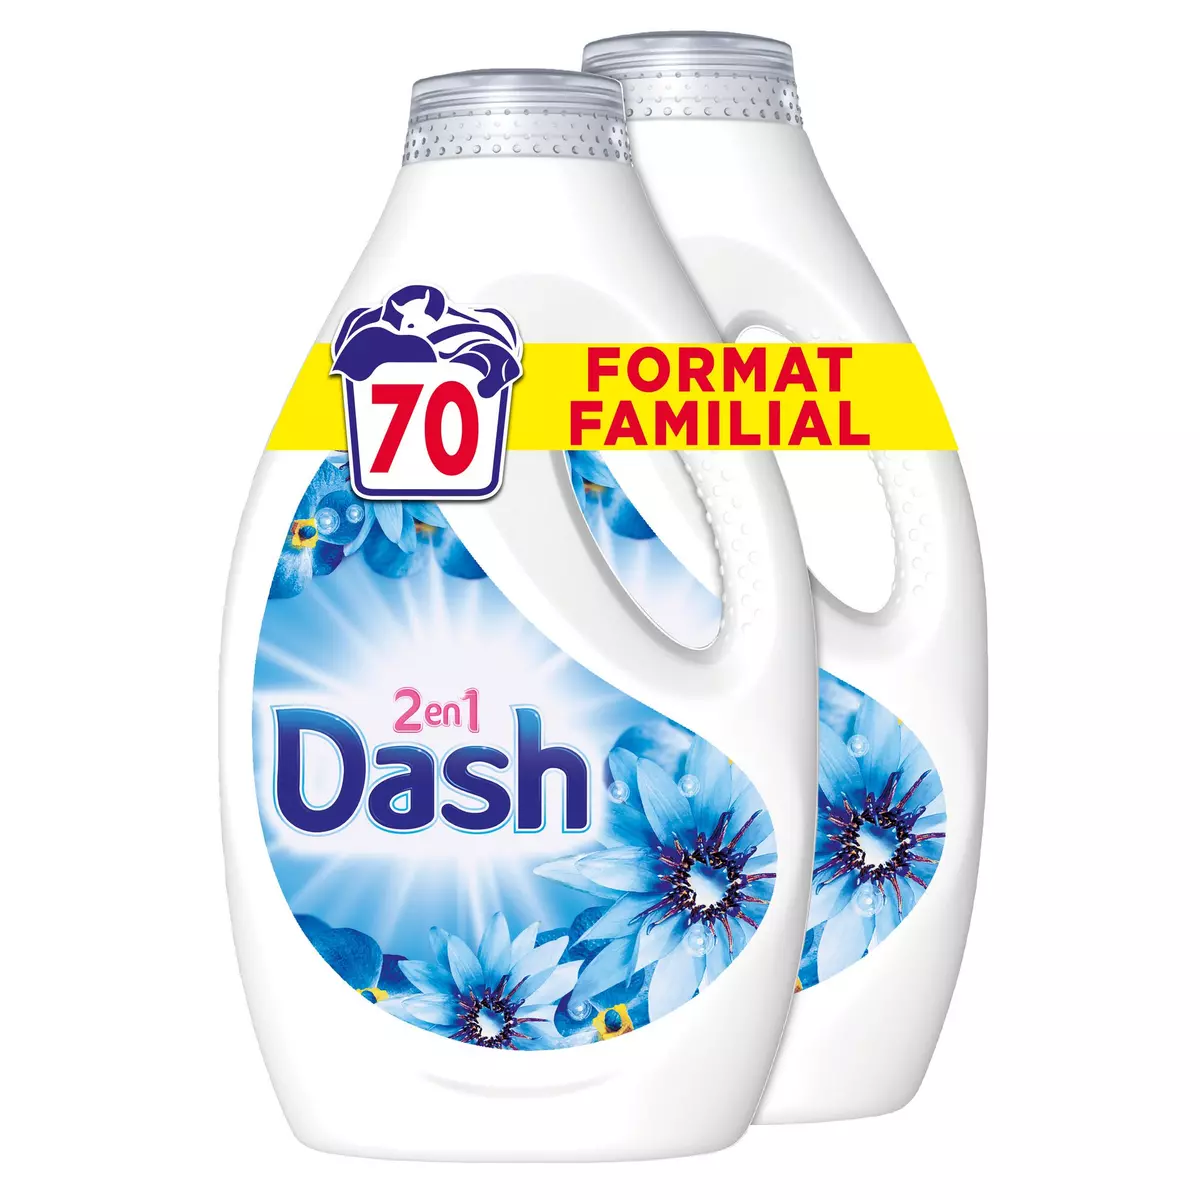 Dash 2en1 Lessive Liquide, 70 Lavages, Envolée D…